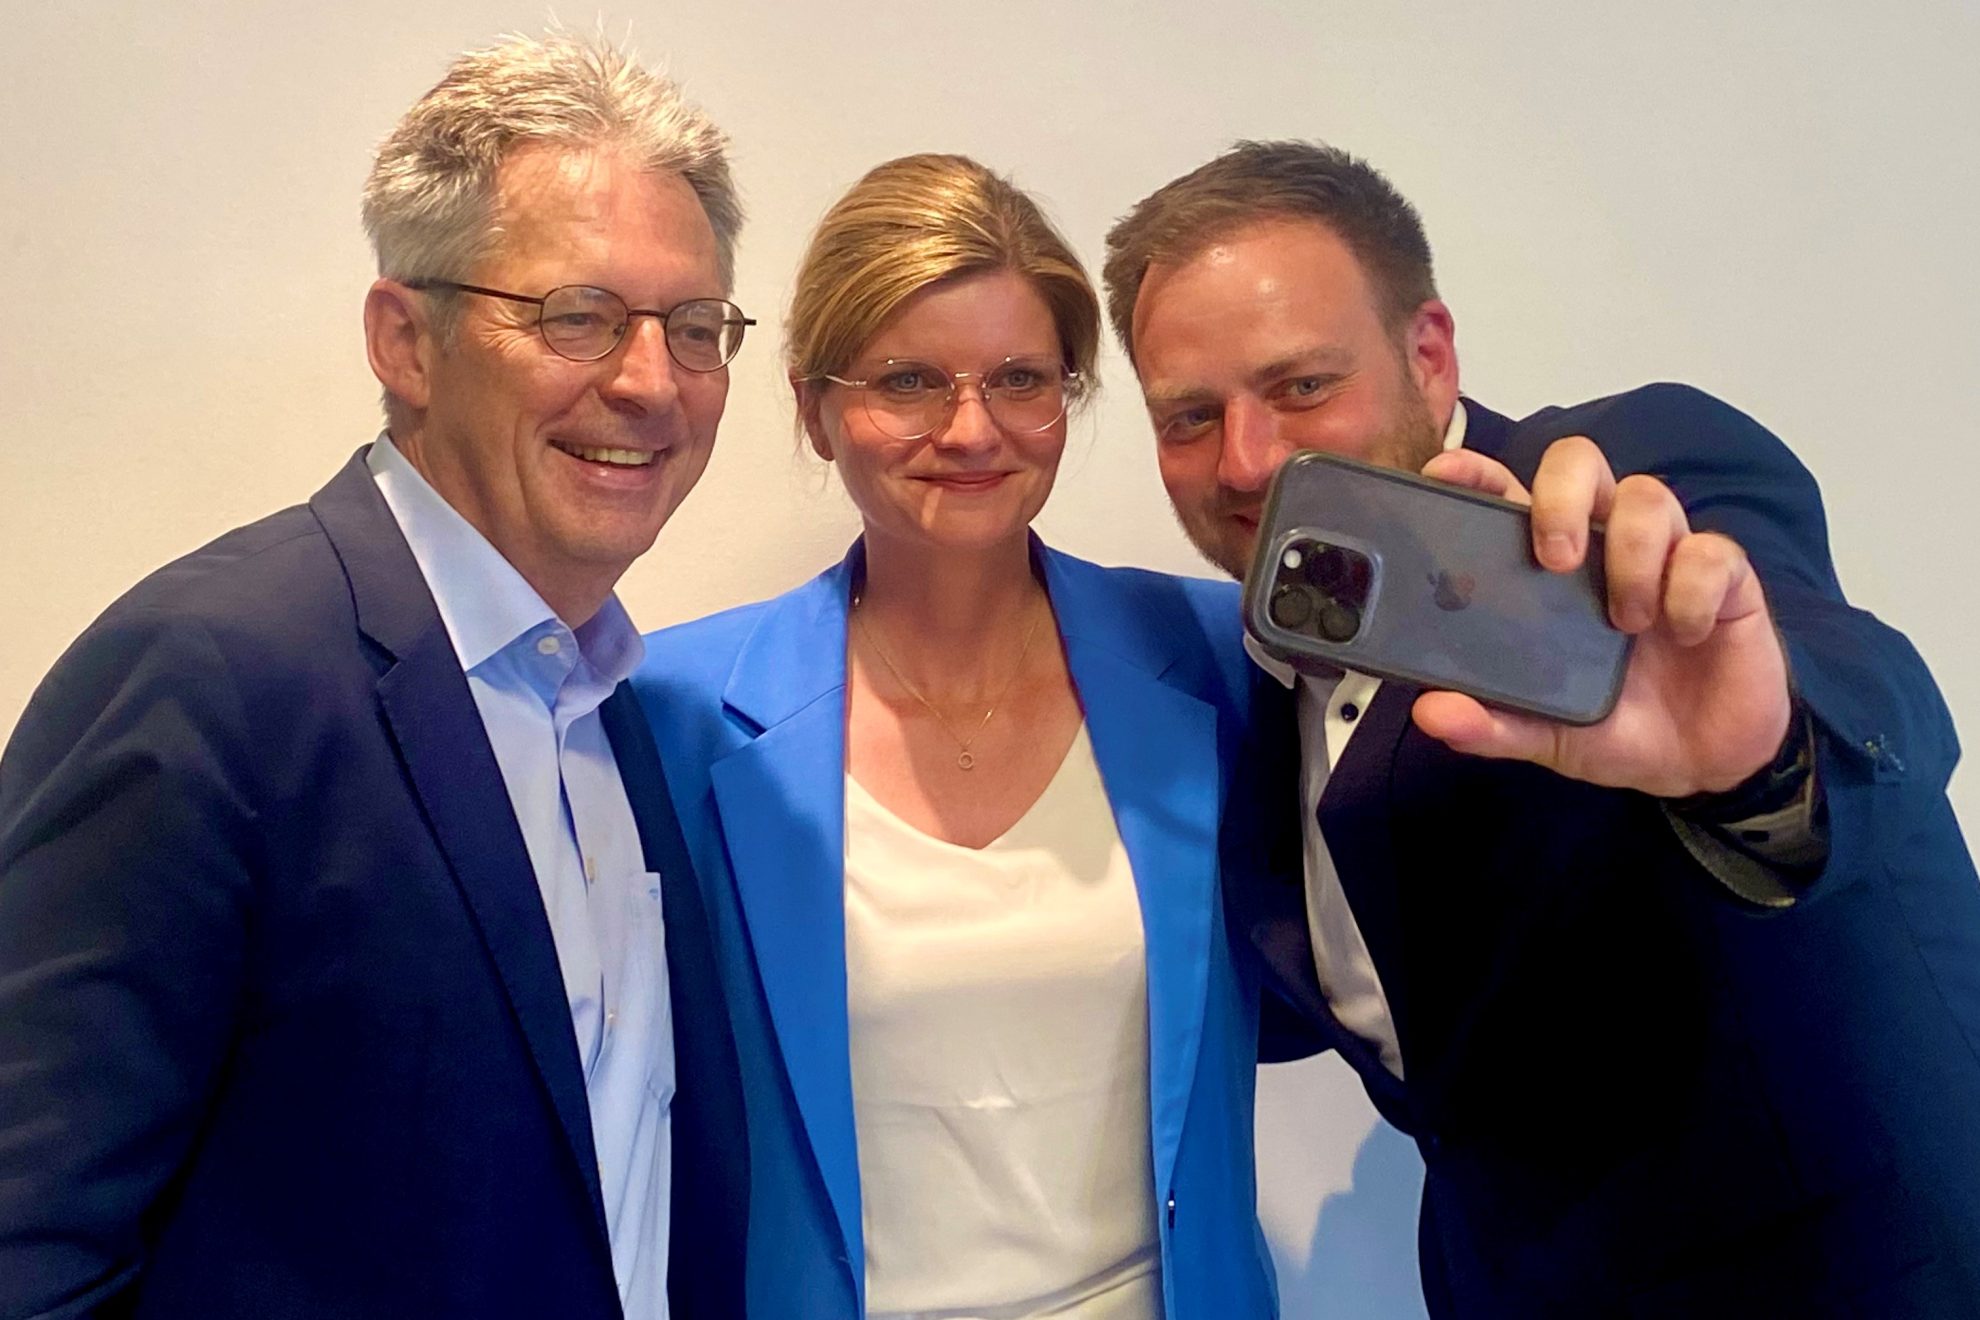 Auf diesem Foto sind Achim Post, Sarah Philipp und Frederick Cordes zu sehen. Frederick Cordes hat ein Handy in der Hand, um ein Selfi von den dreien zu machen.